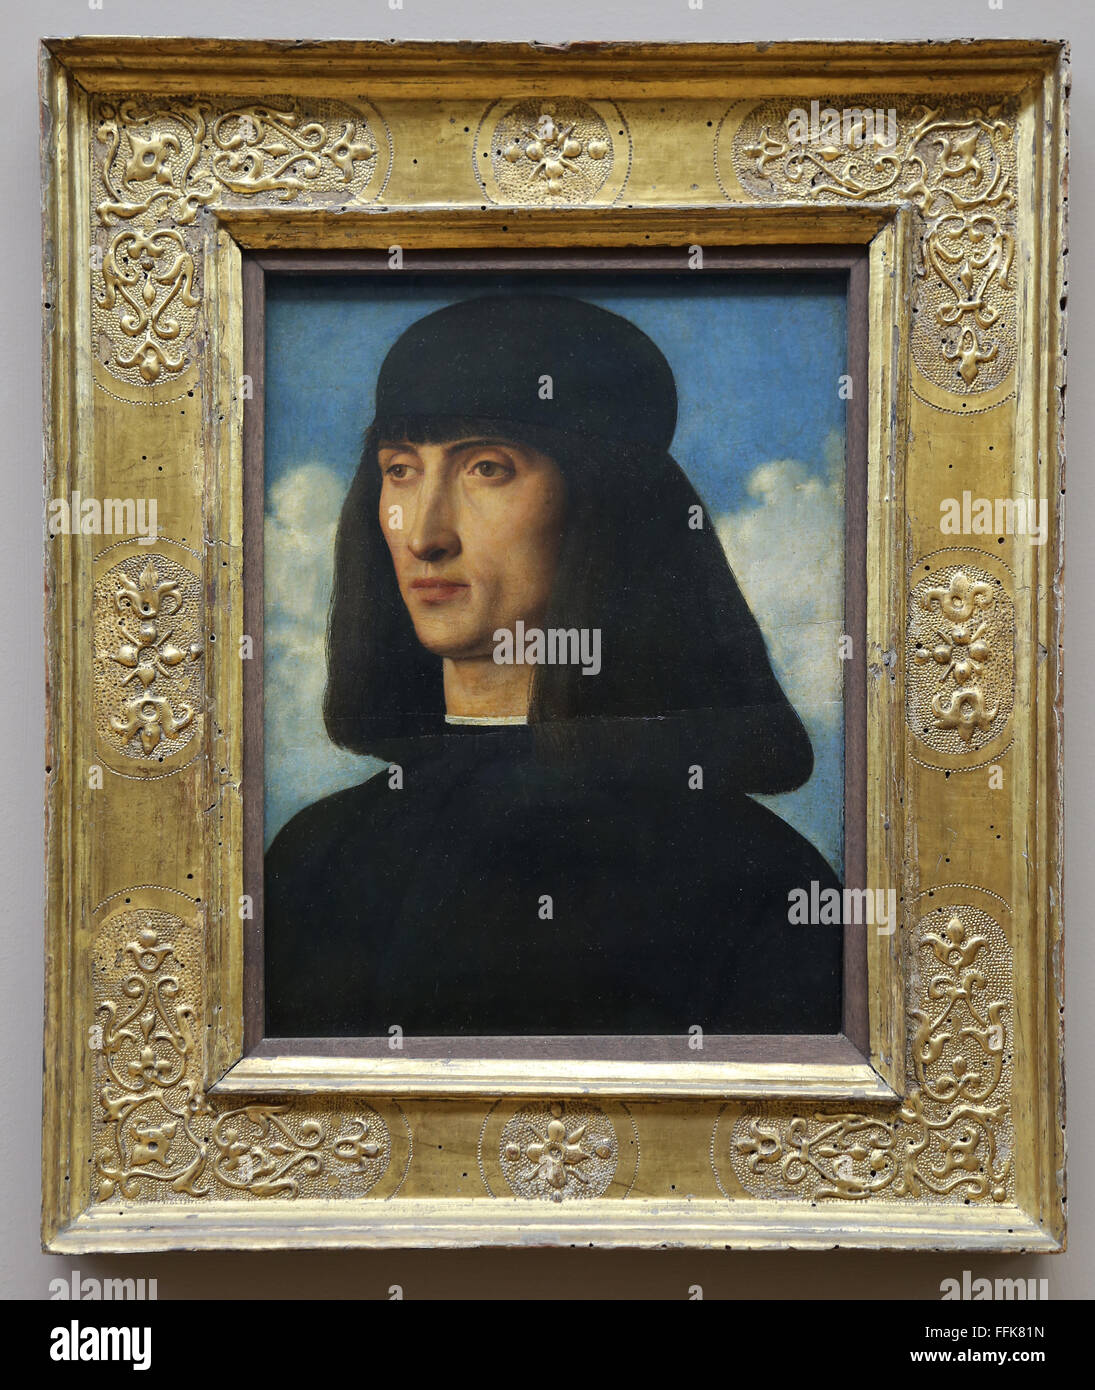 Der italienische Maler Giovanni Bellini (1430-1516). Porträt eines Mannes. Louvre-Museum. Paris. Frankreich. Renaissance. Stockfoto